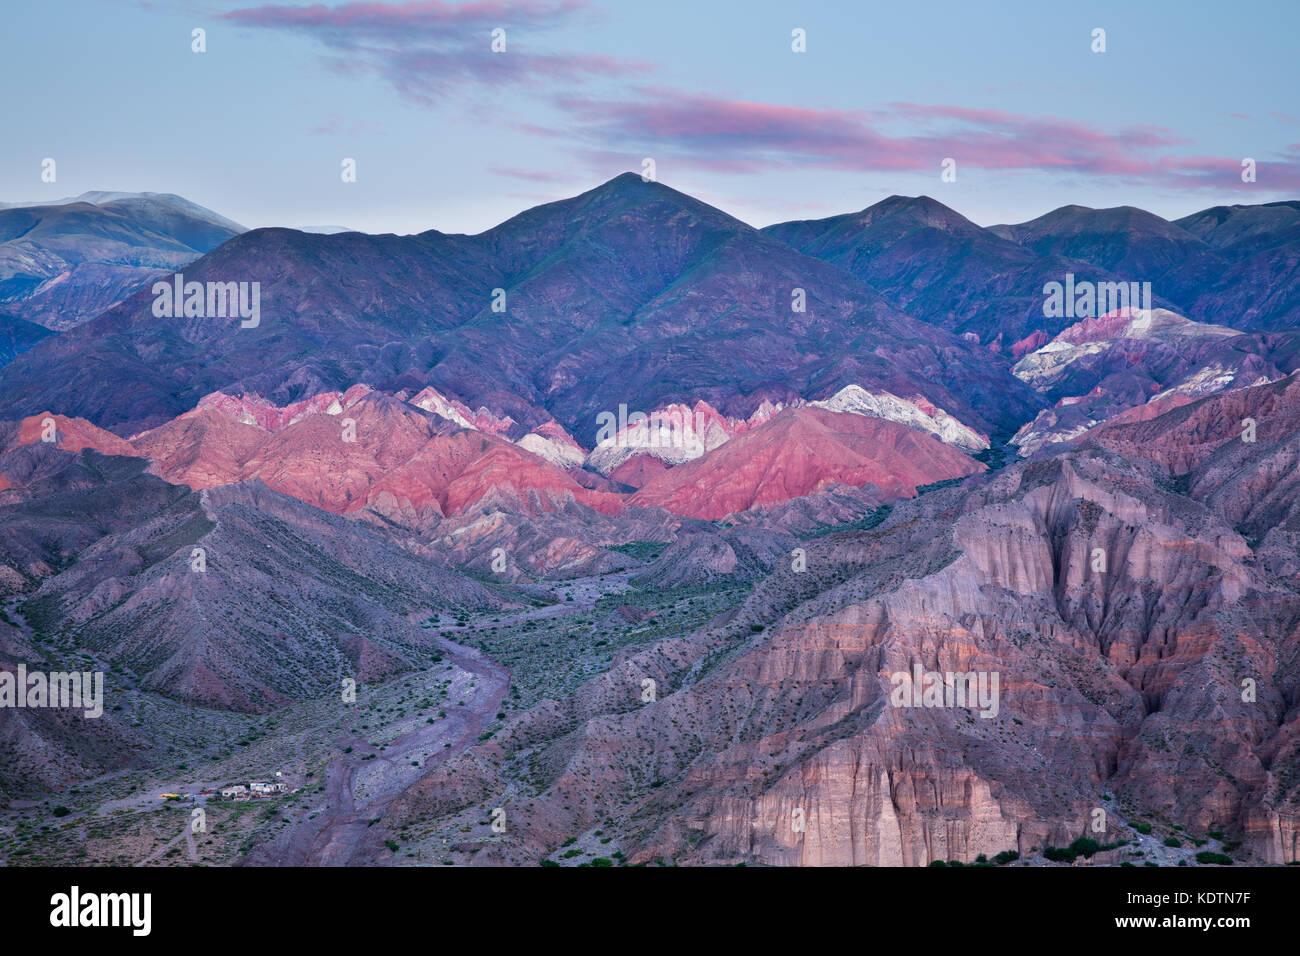 Des couleurs dans les montagnes de la quebrada de Humahuaca tilcara nr à l'aube, province de Jujuy, Argentine Banque D'Images